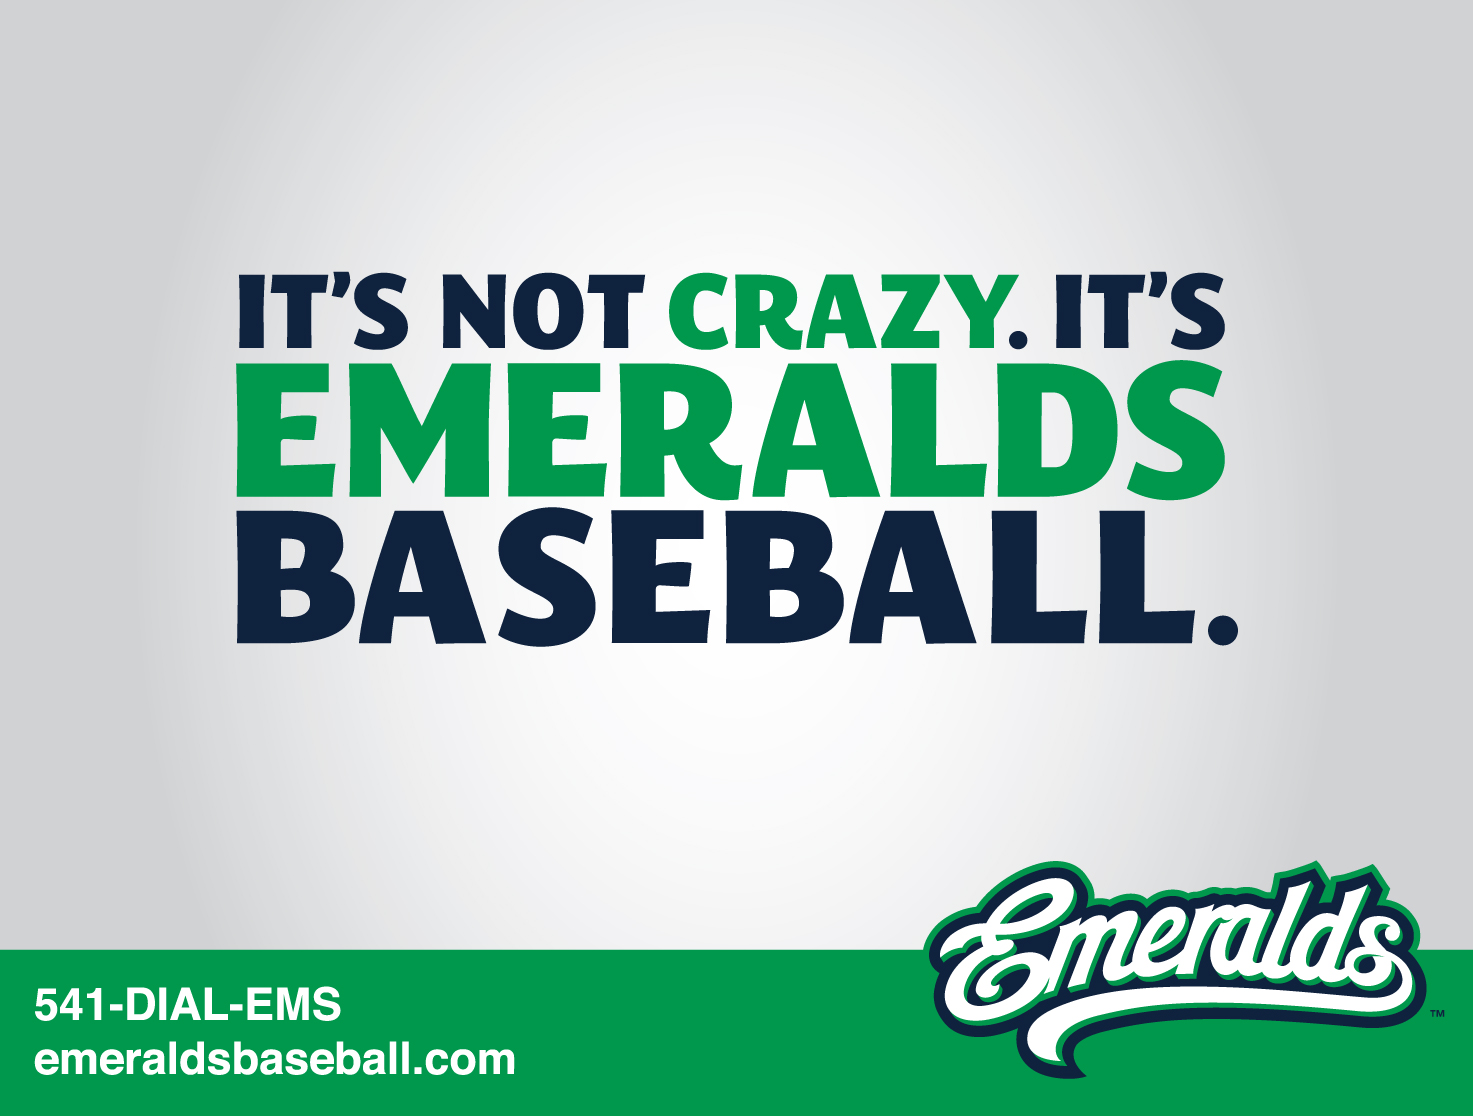 eugene emeralds ad